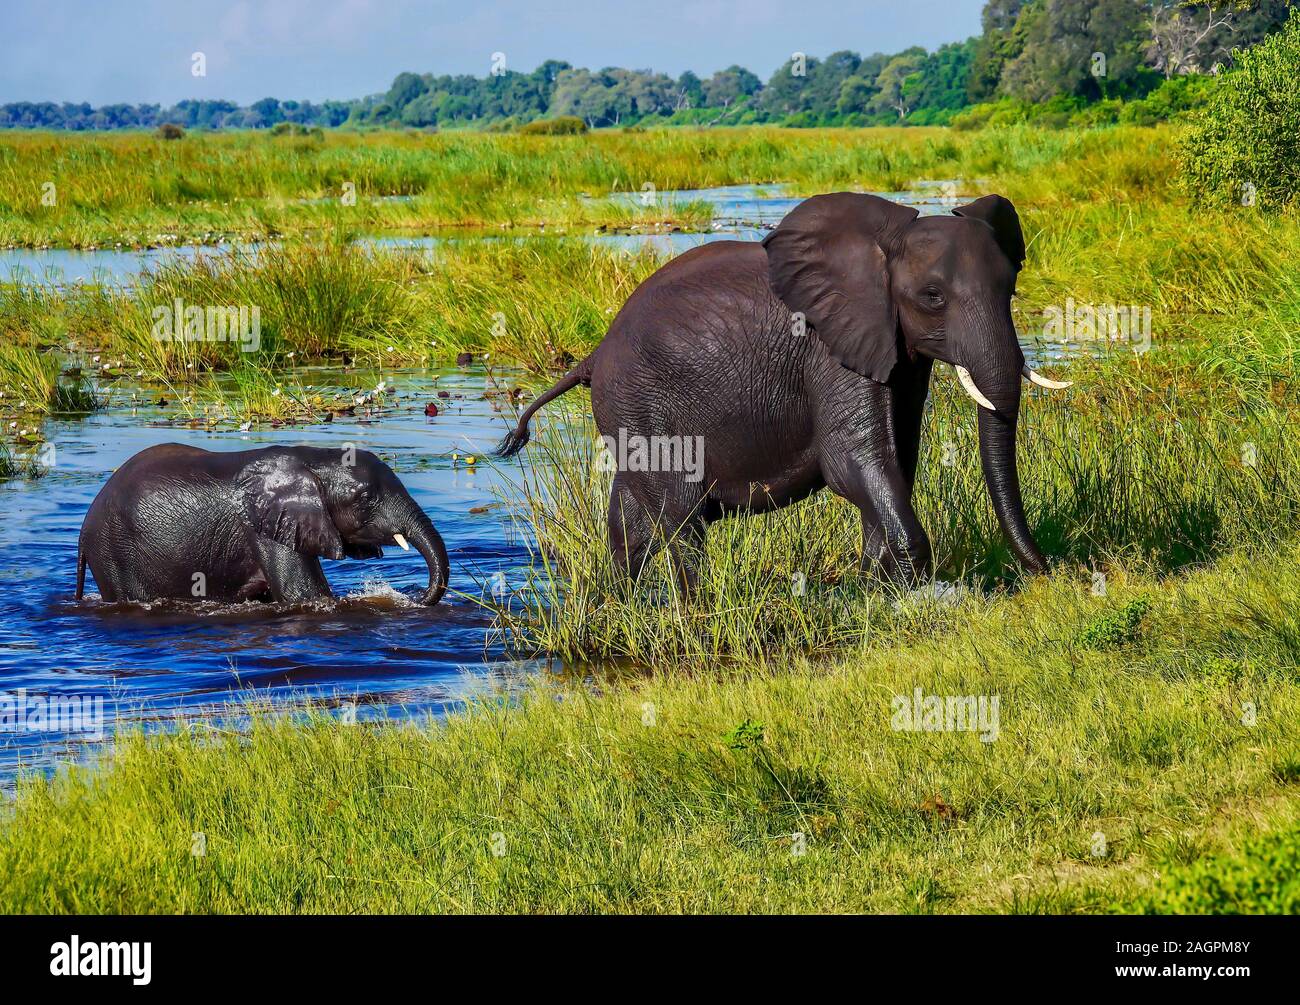 Una madre dell' elefante africano conduce il suo bagnato bambino fuori dell'acqua e su una riva erbosa, dopo una nuotata in un fiume nel lussureggiante verde, Okavango Delta Foto Stock